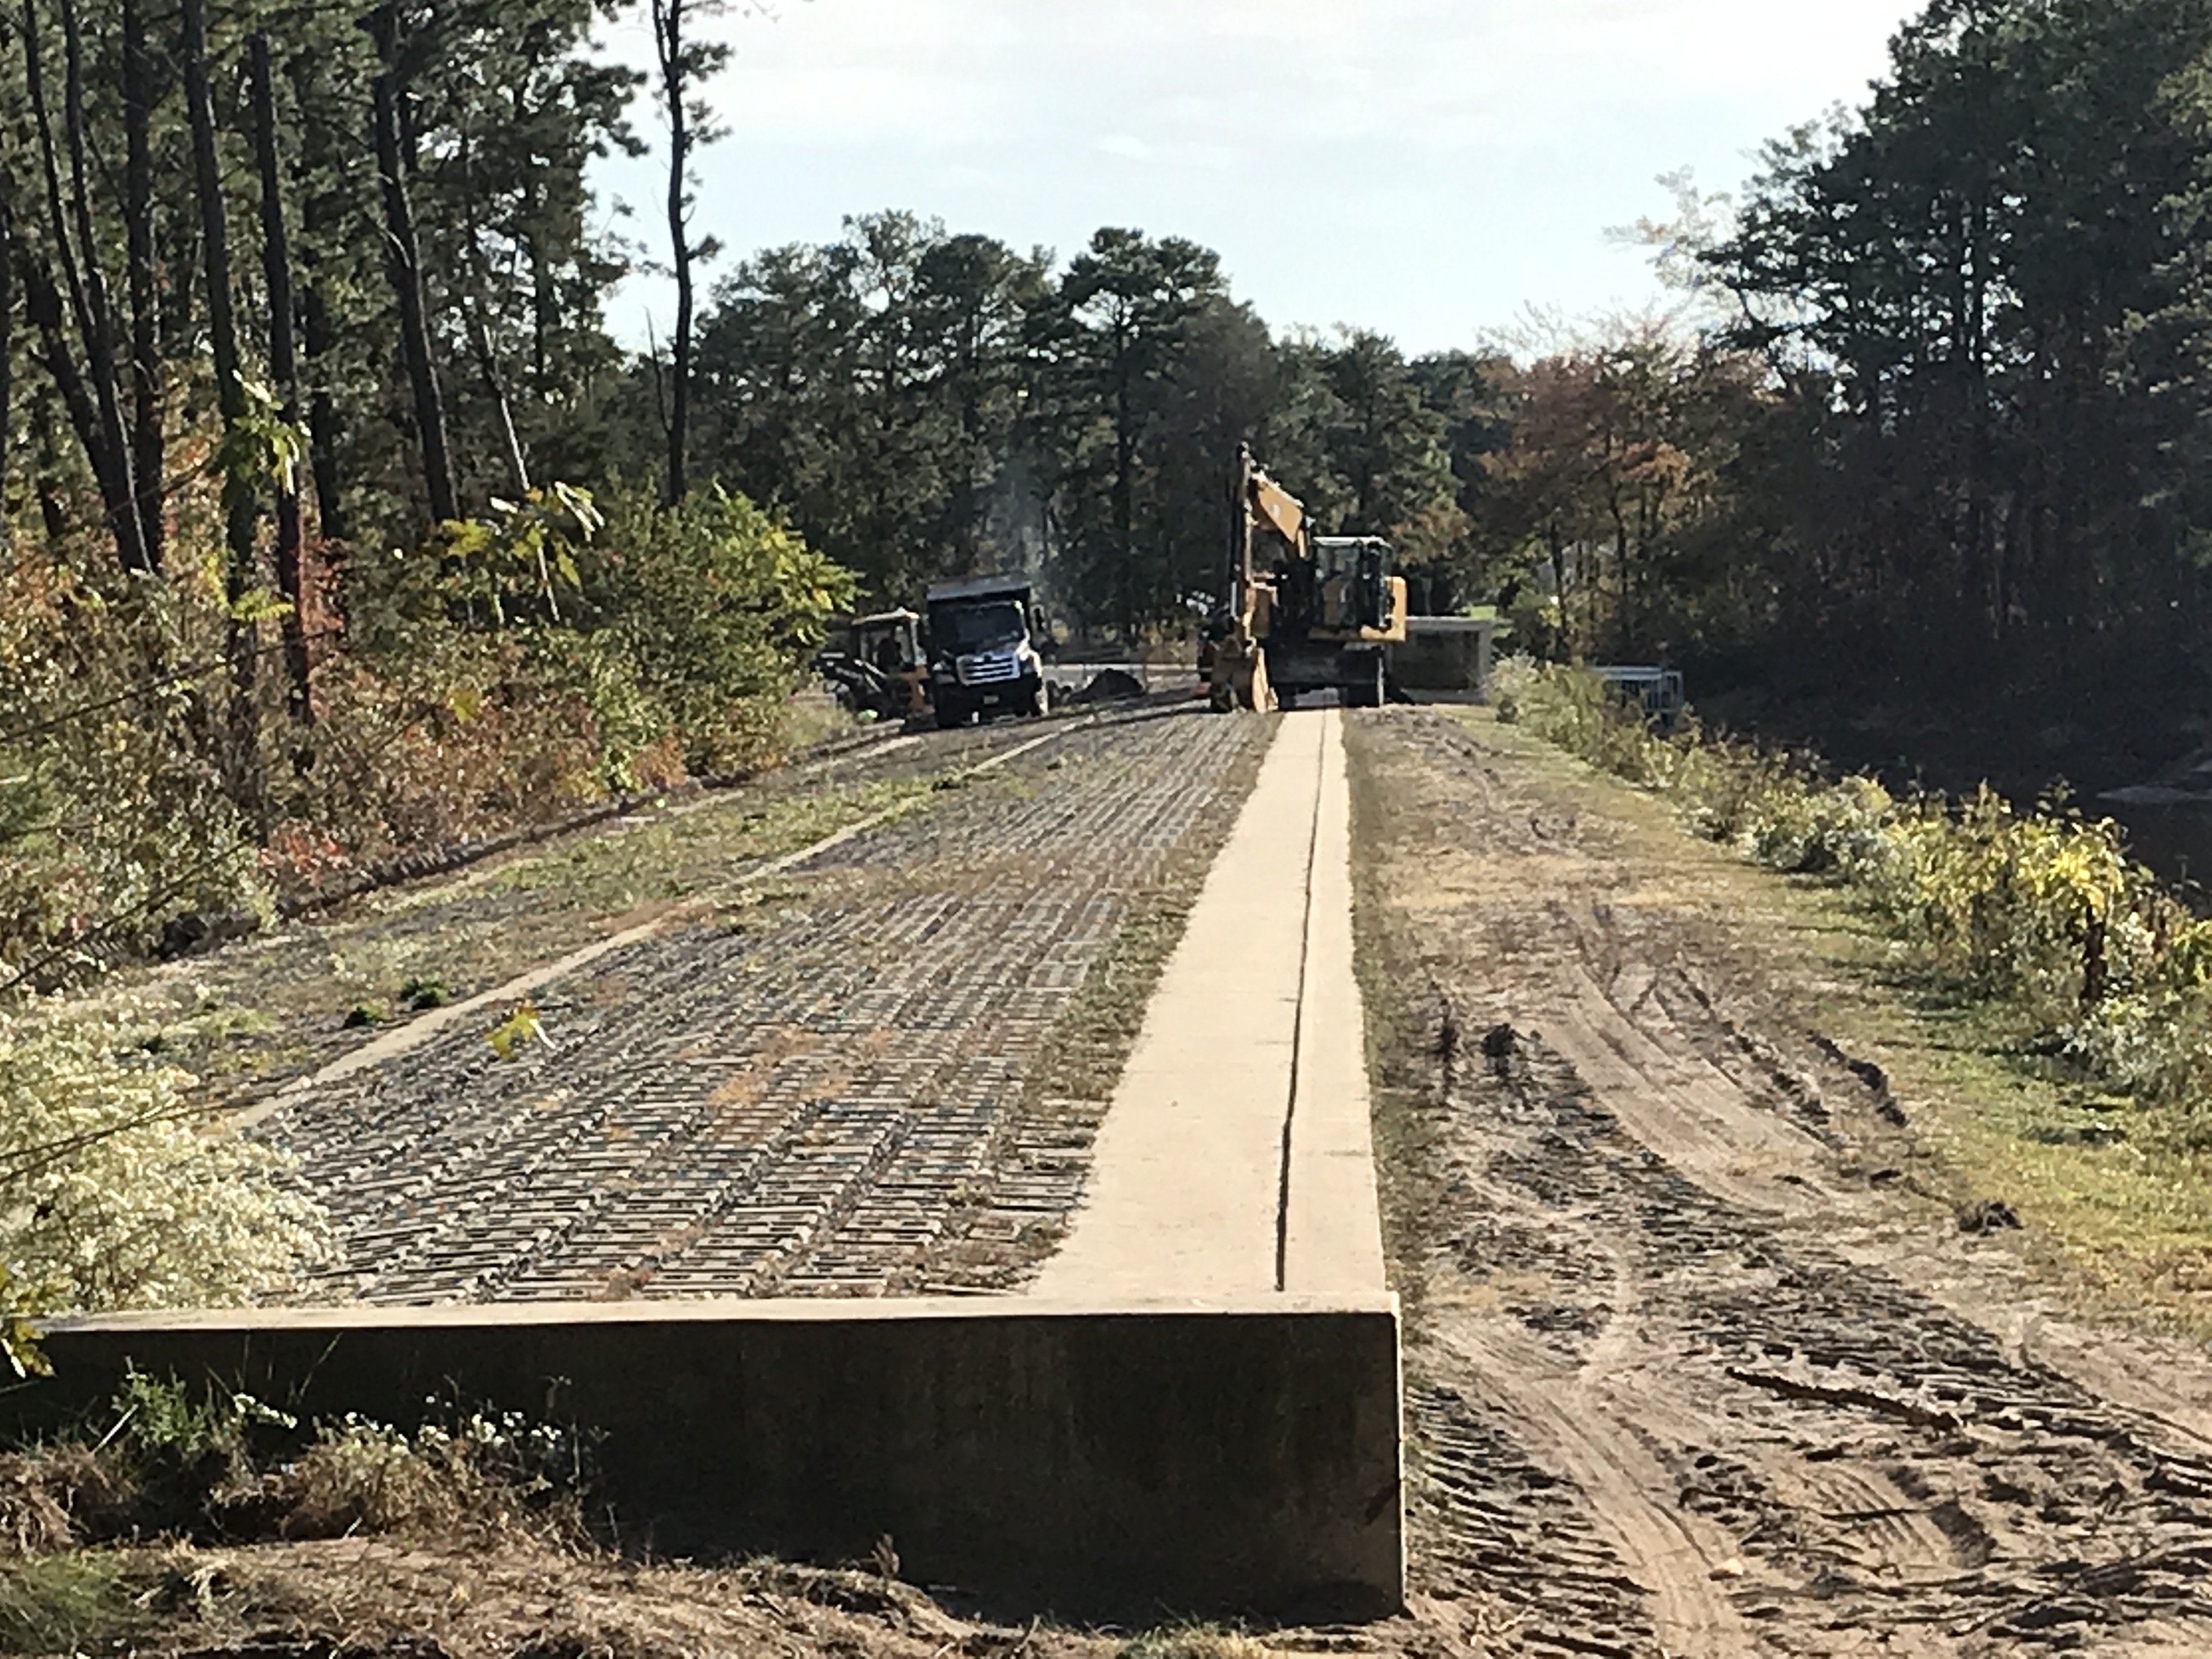 Work underway to replace the Lake Riviera dam in Brick, Oct. 2019. (Photo: Daniel Nee)